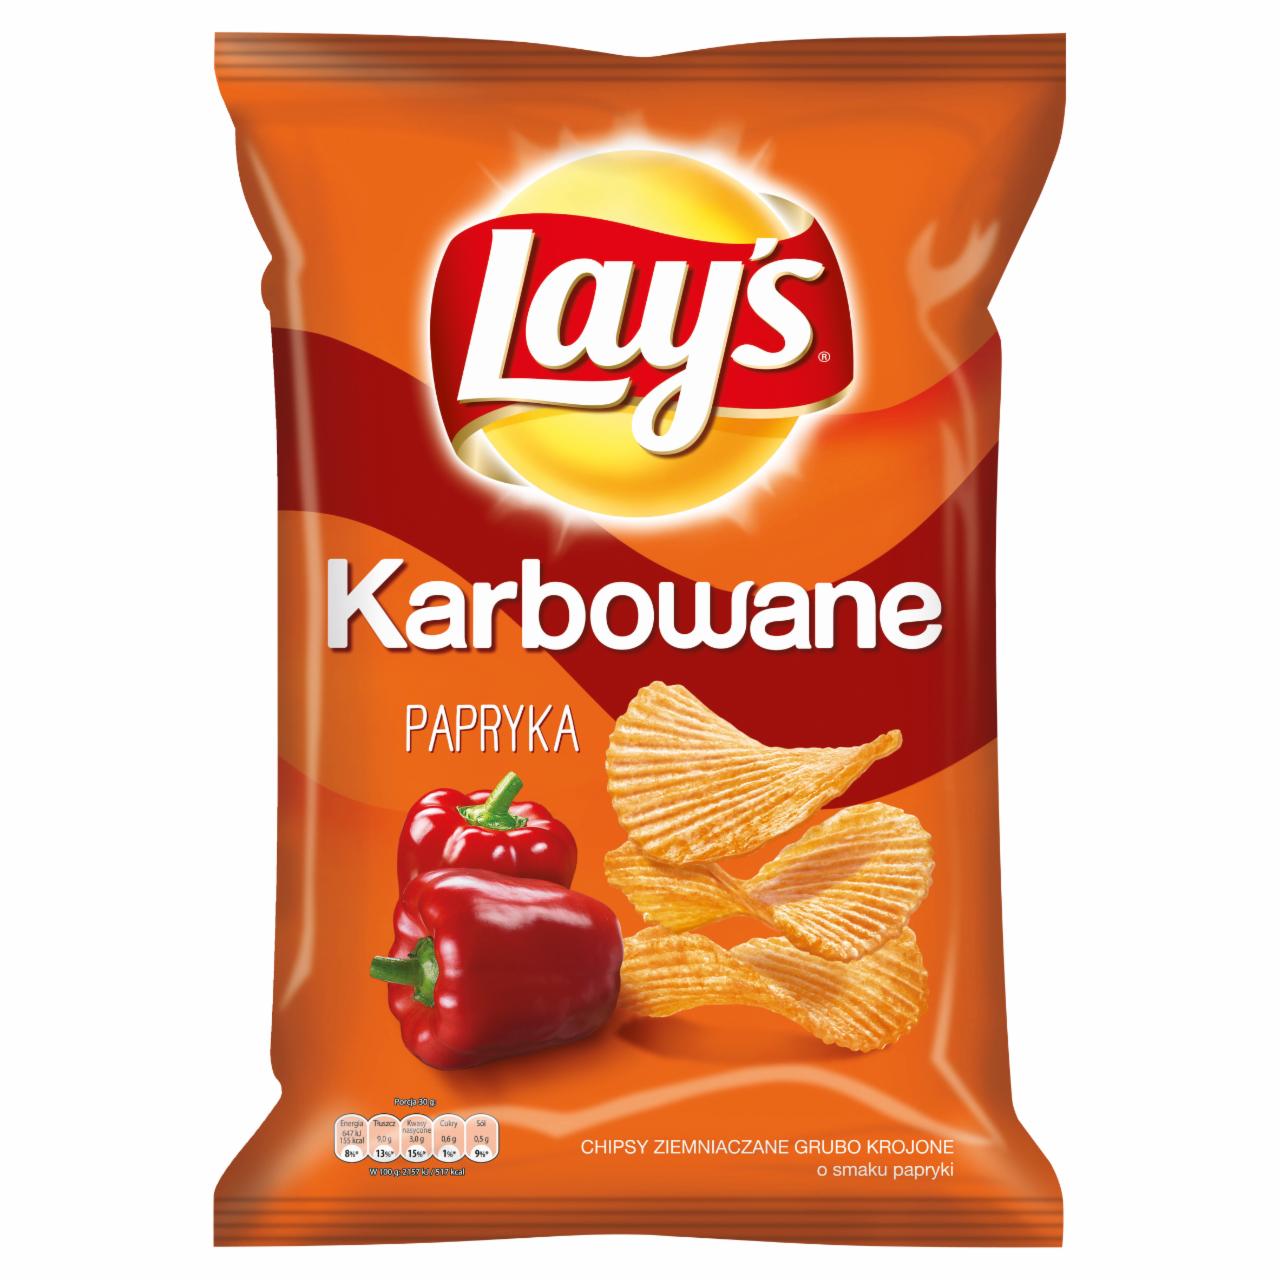 Zdjęcia - Lay's Karbowane Papryka Chipsy ziemniaczane 140 g